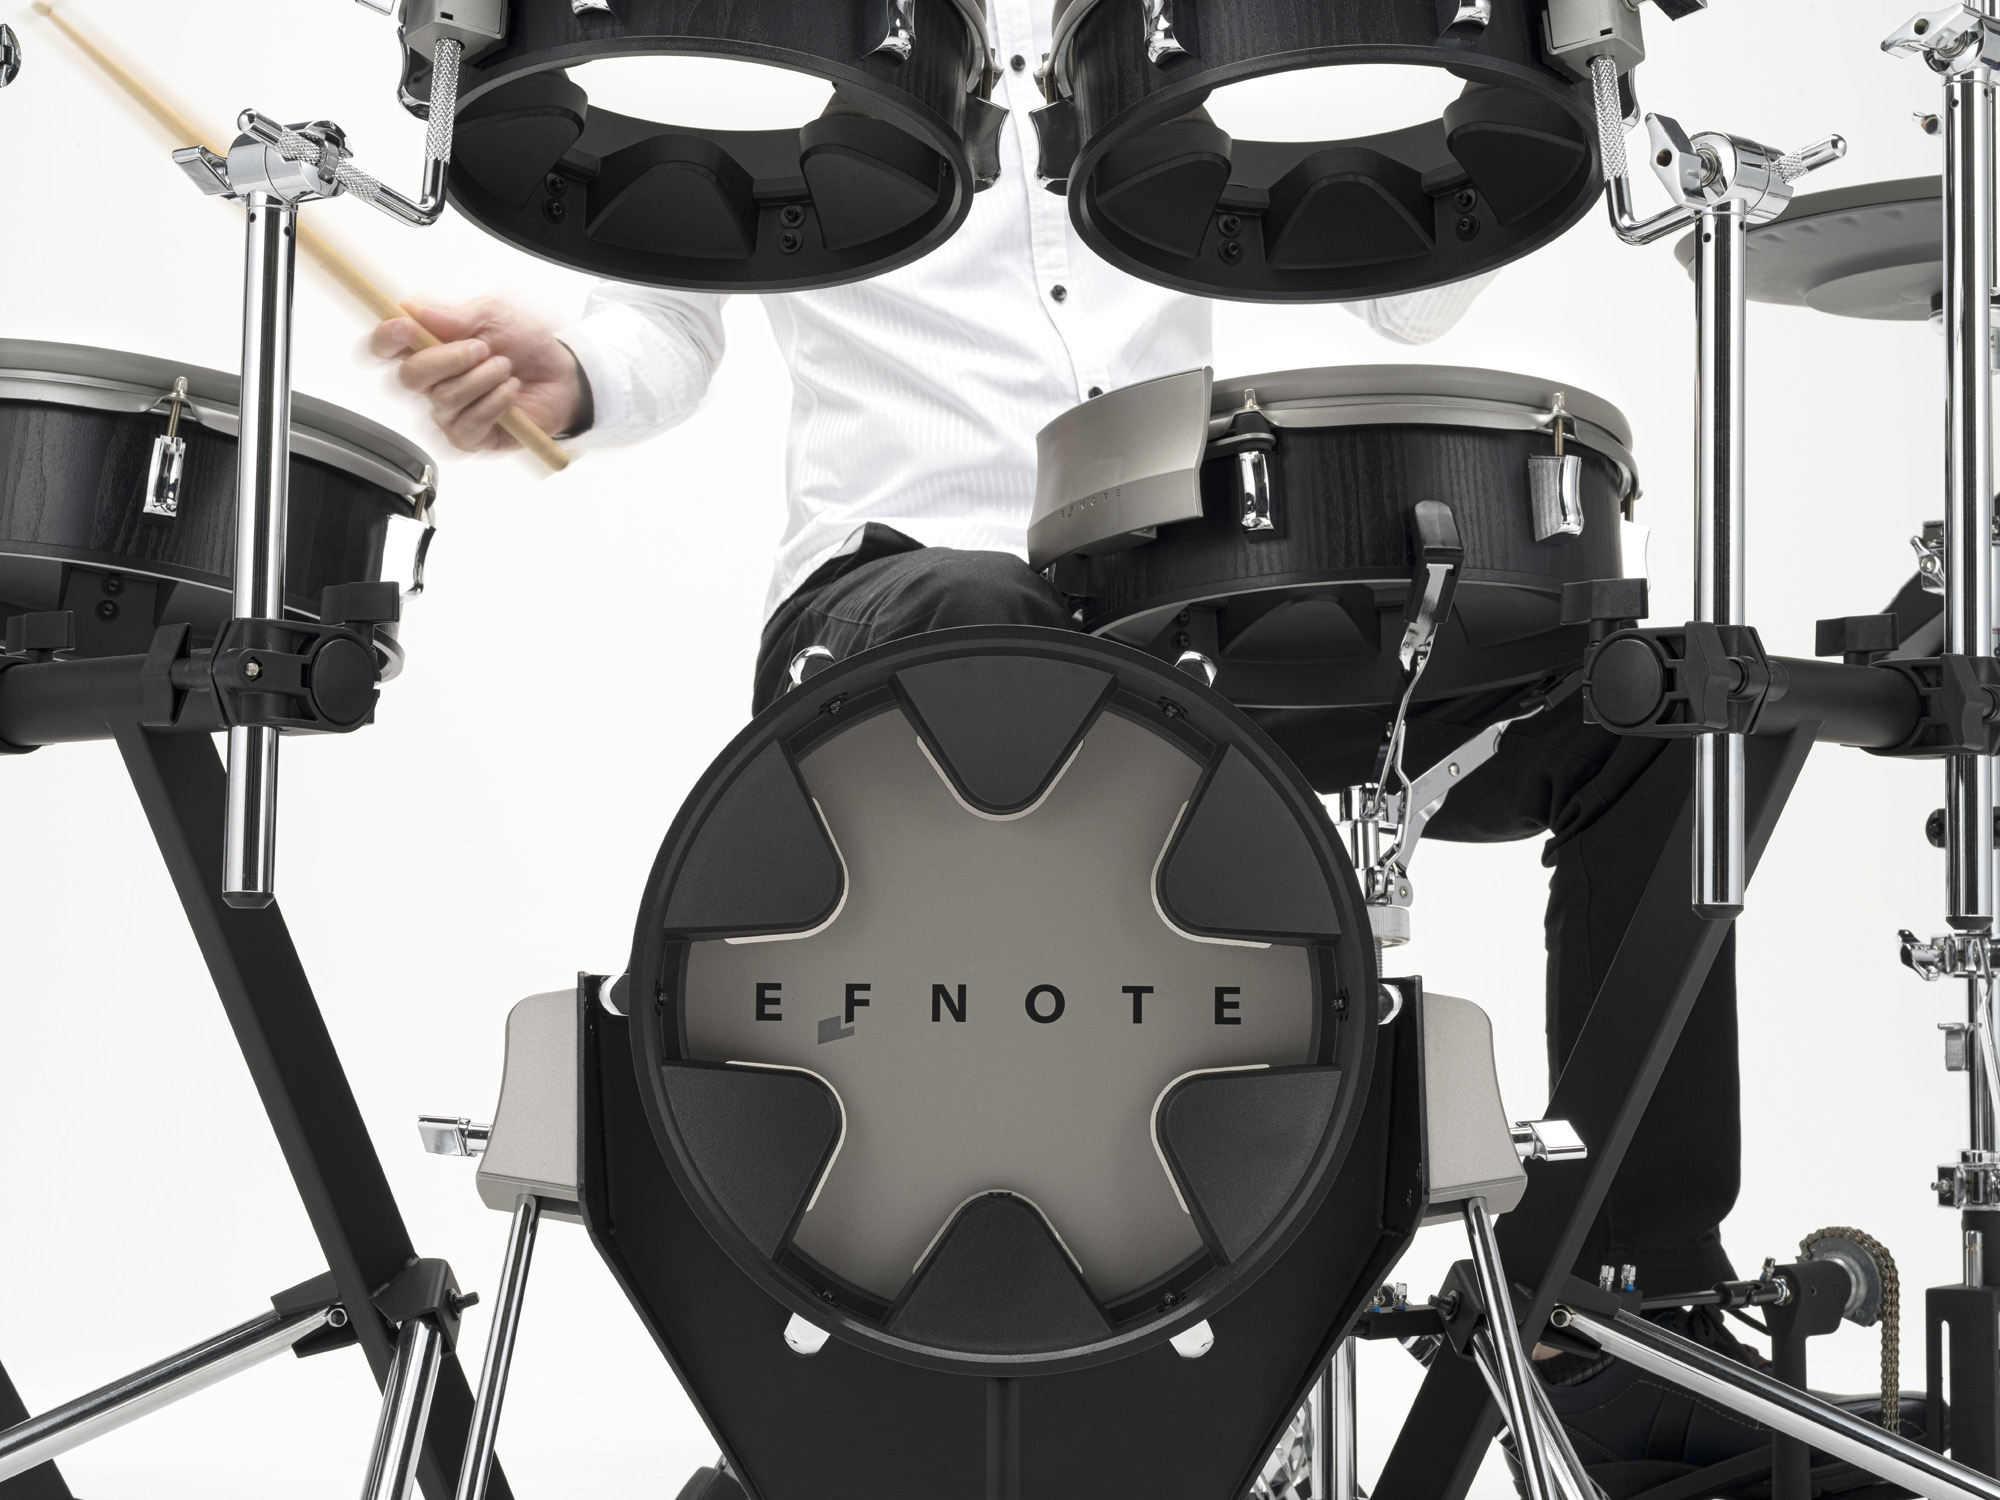 Efnote Efd3x Drum Kit - Batería electrónica completa - Variation 3